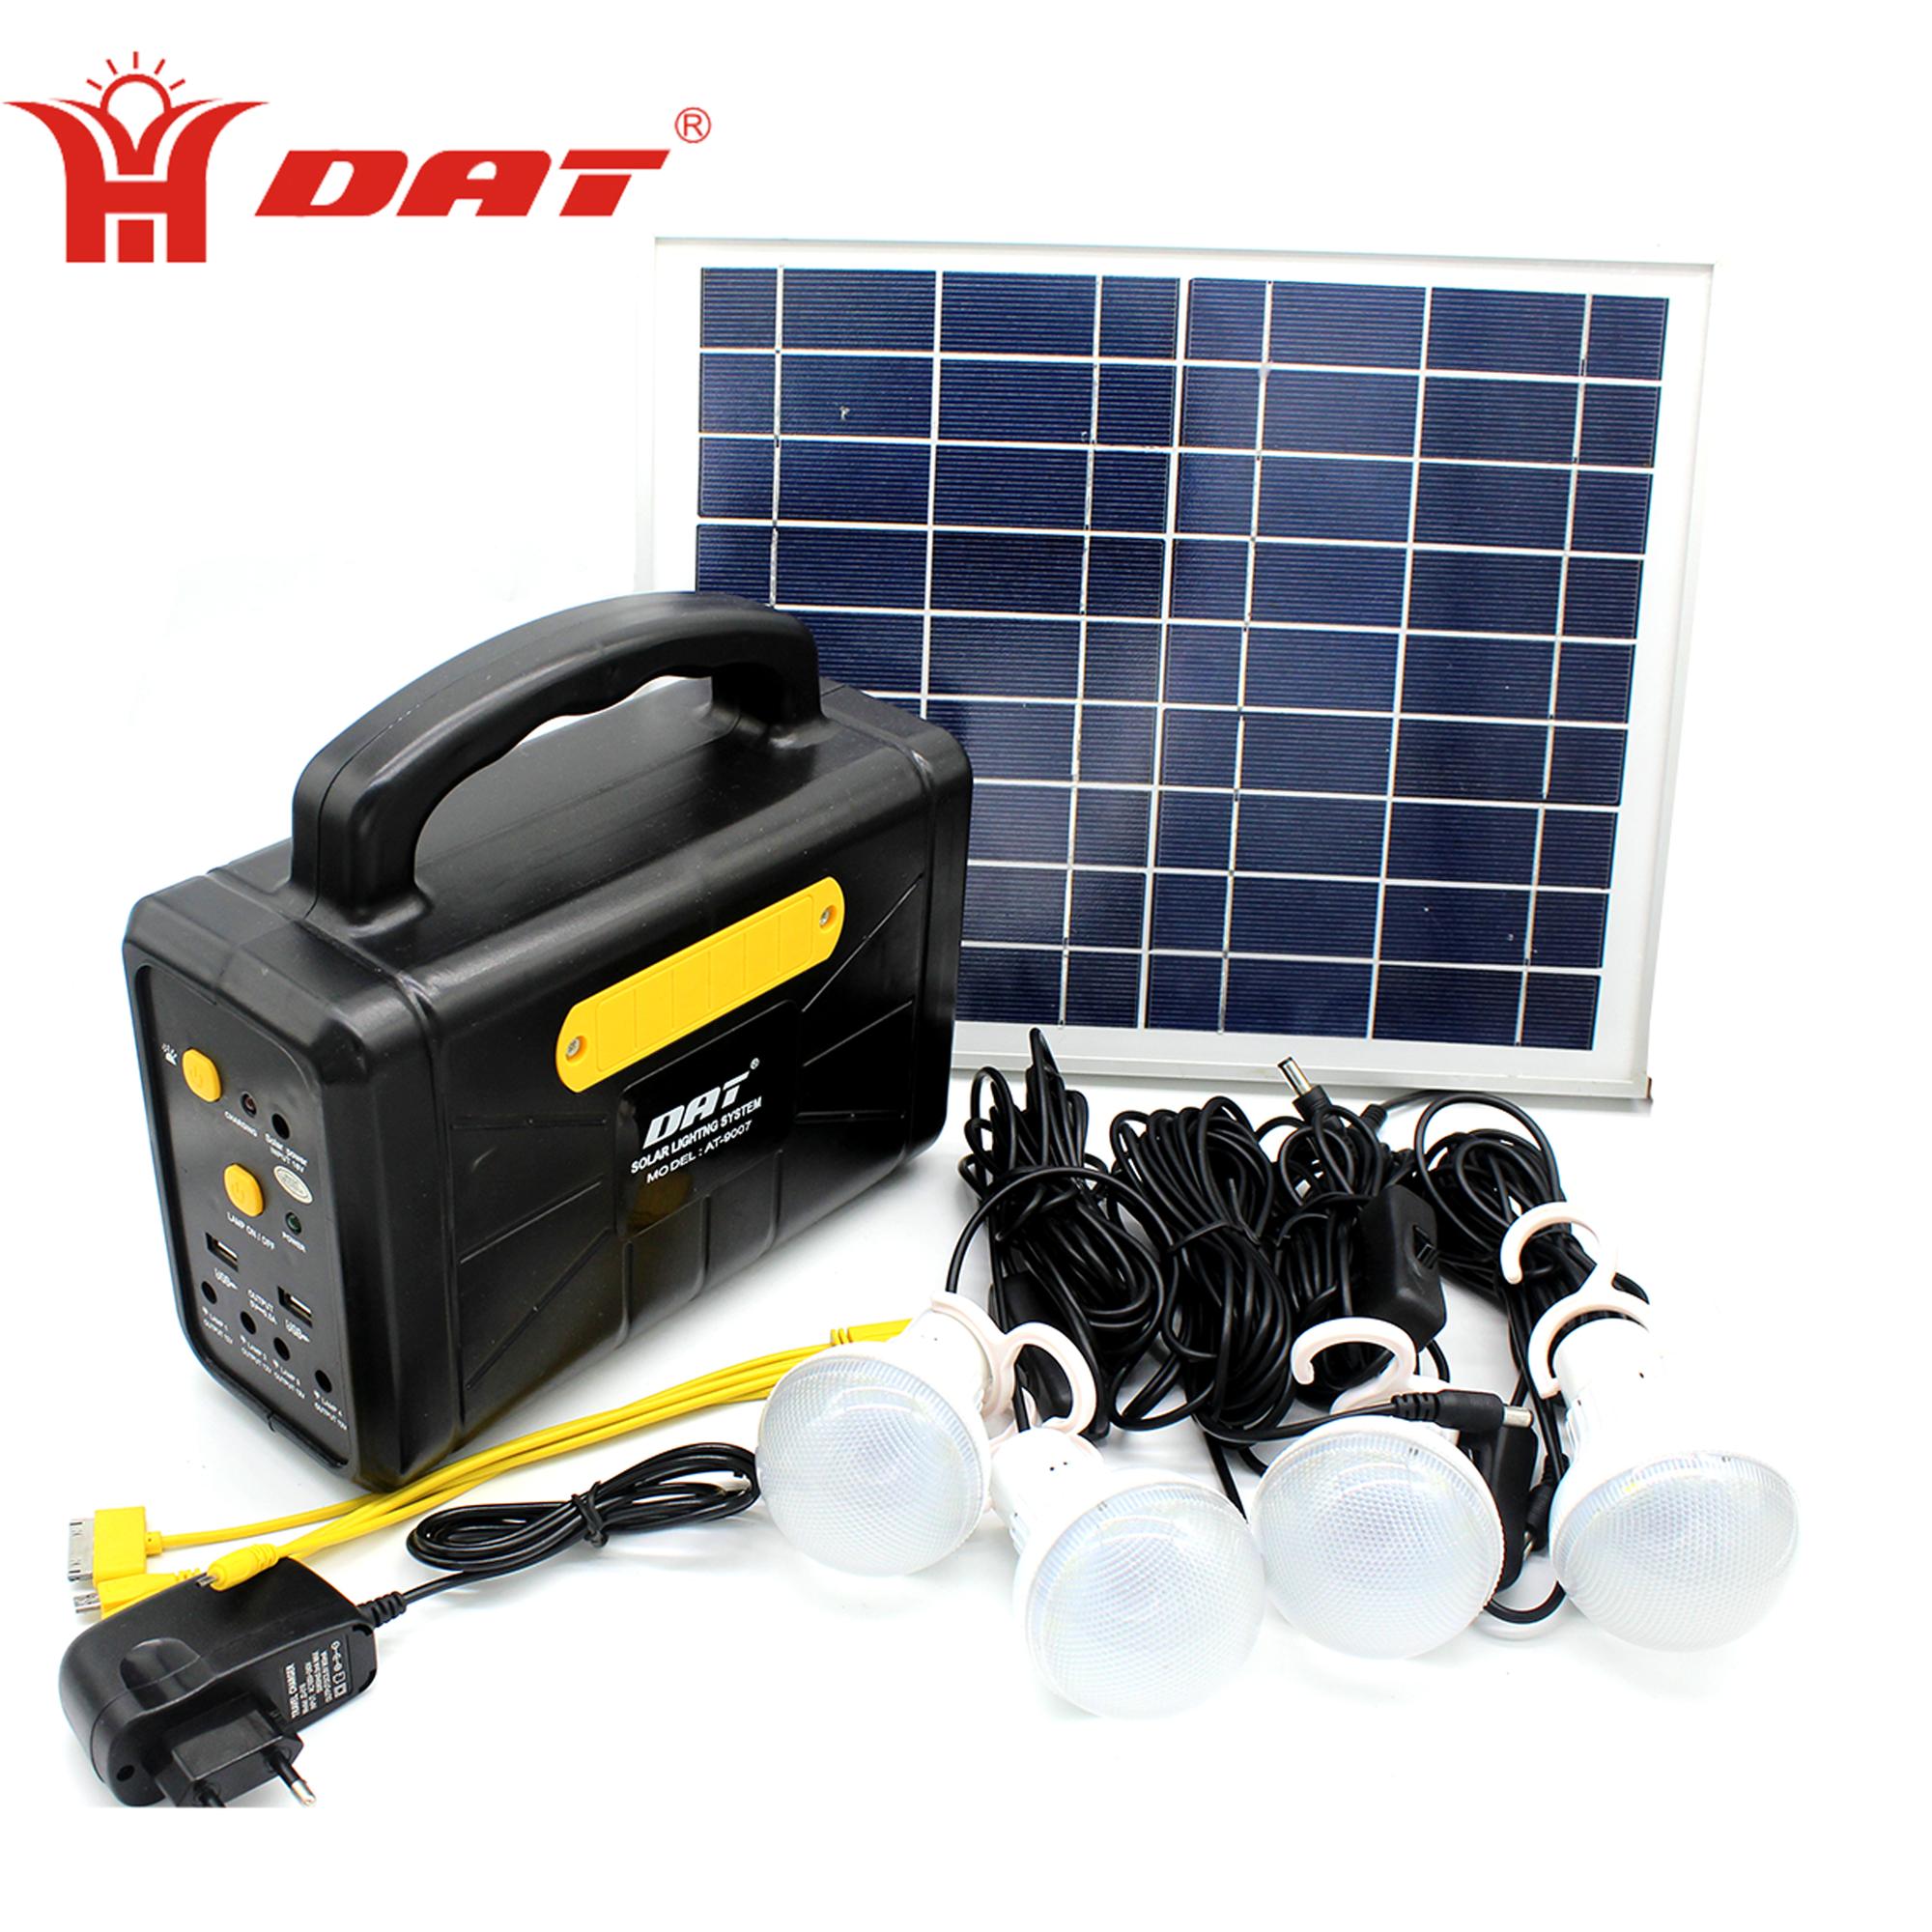 12v solar energy kits AT-9007 with inverter emergency led light